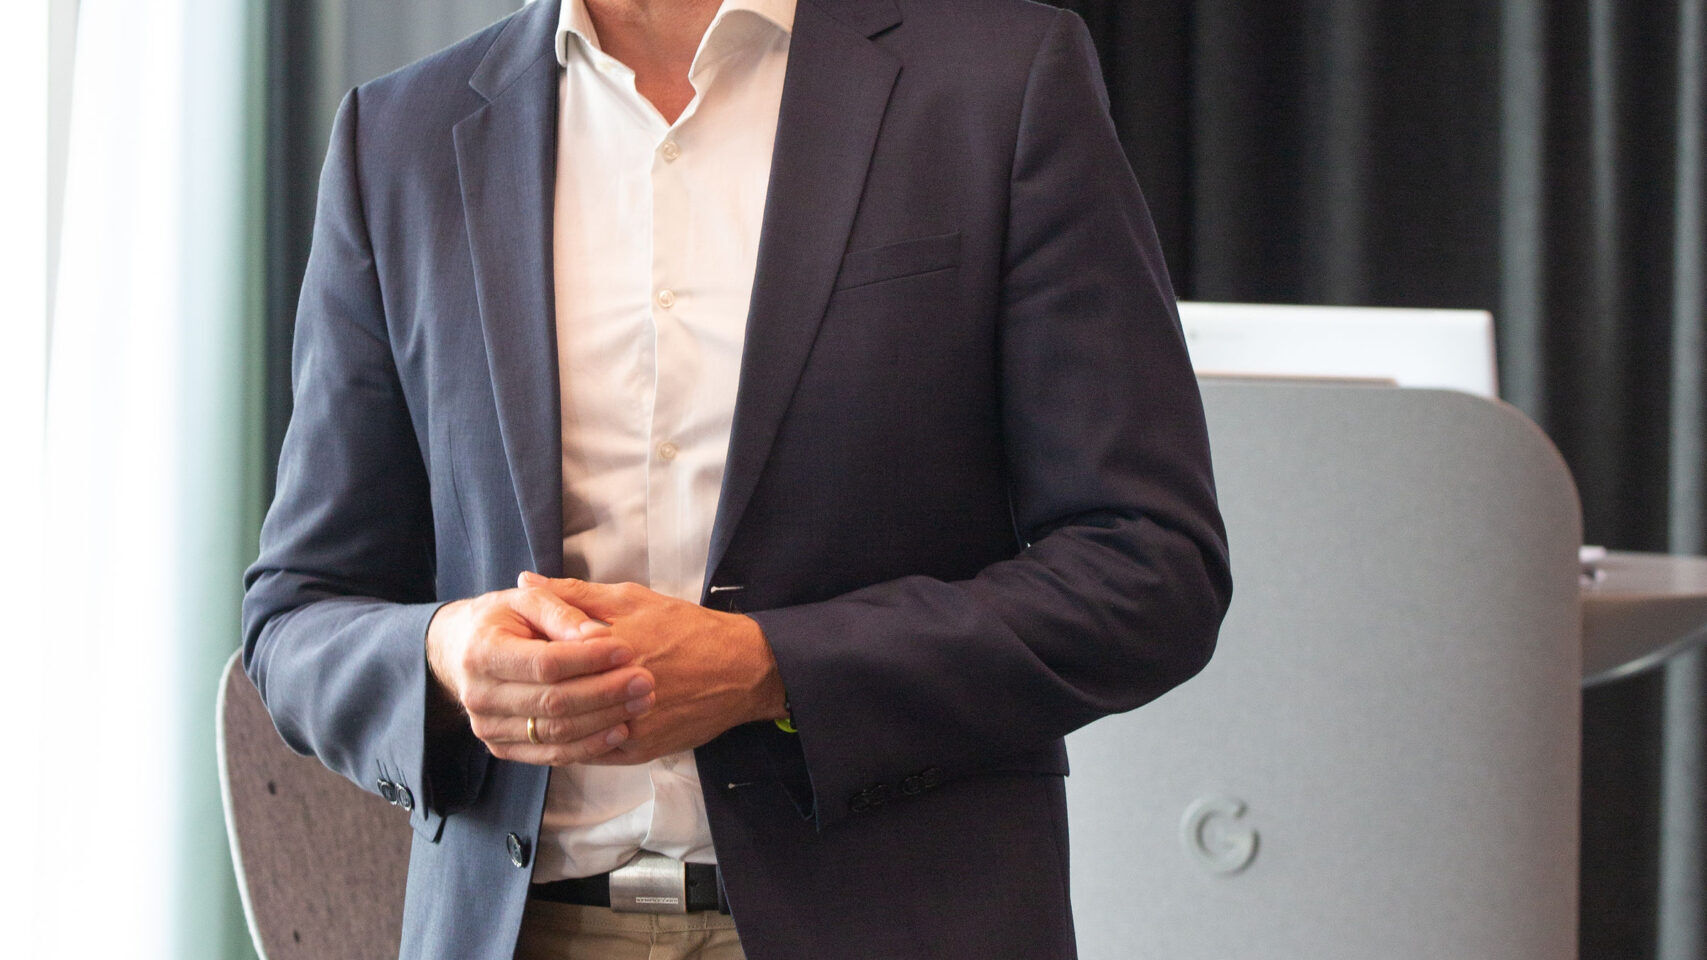 Andreas Briese, državni direktor YouTuba v Nemčiji in regionalni direktor za srednjo Evropo, se je 27. junija 2022 udeležil uradne otvoritve novega Google Campusa Europaallee v Zürichu.